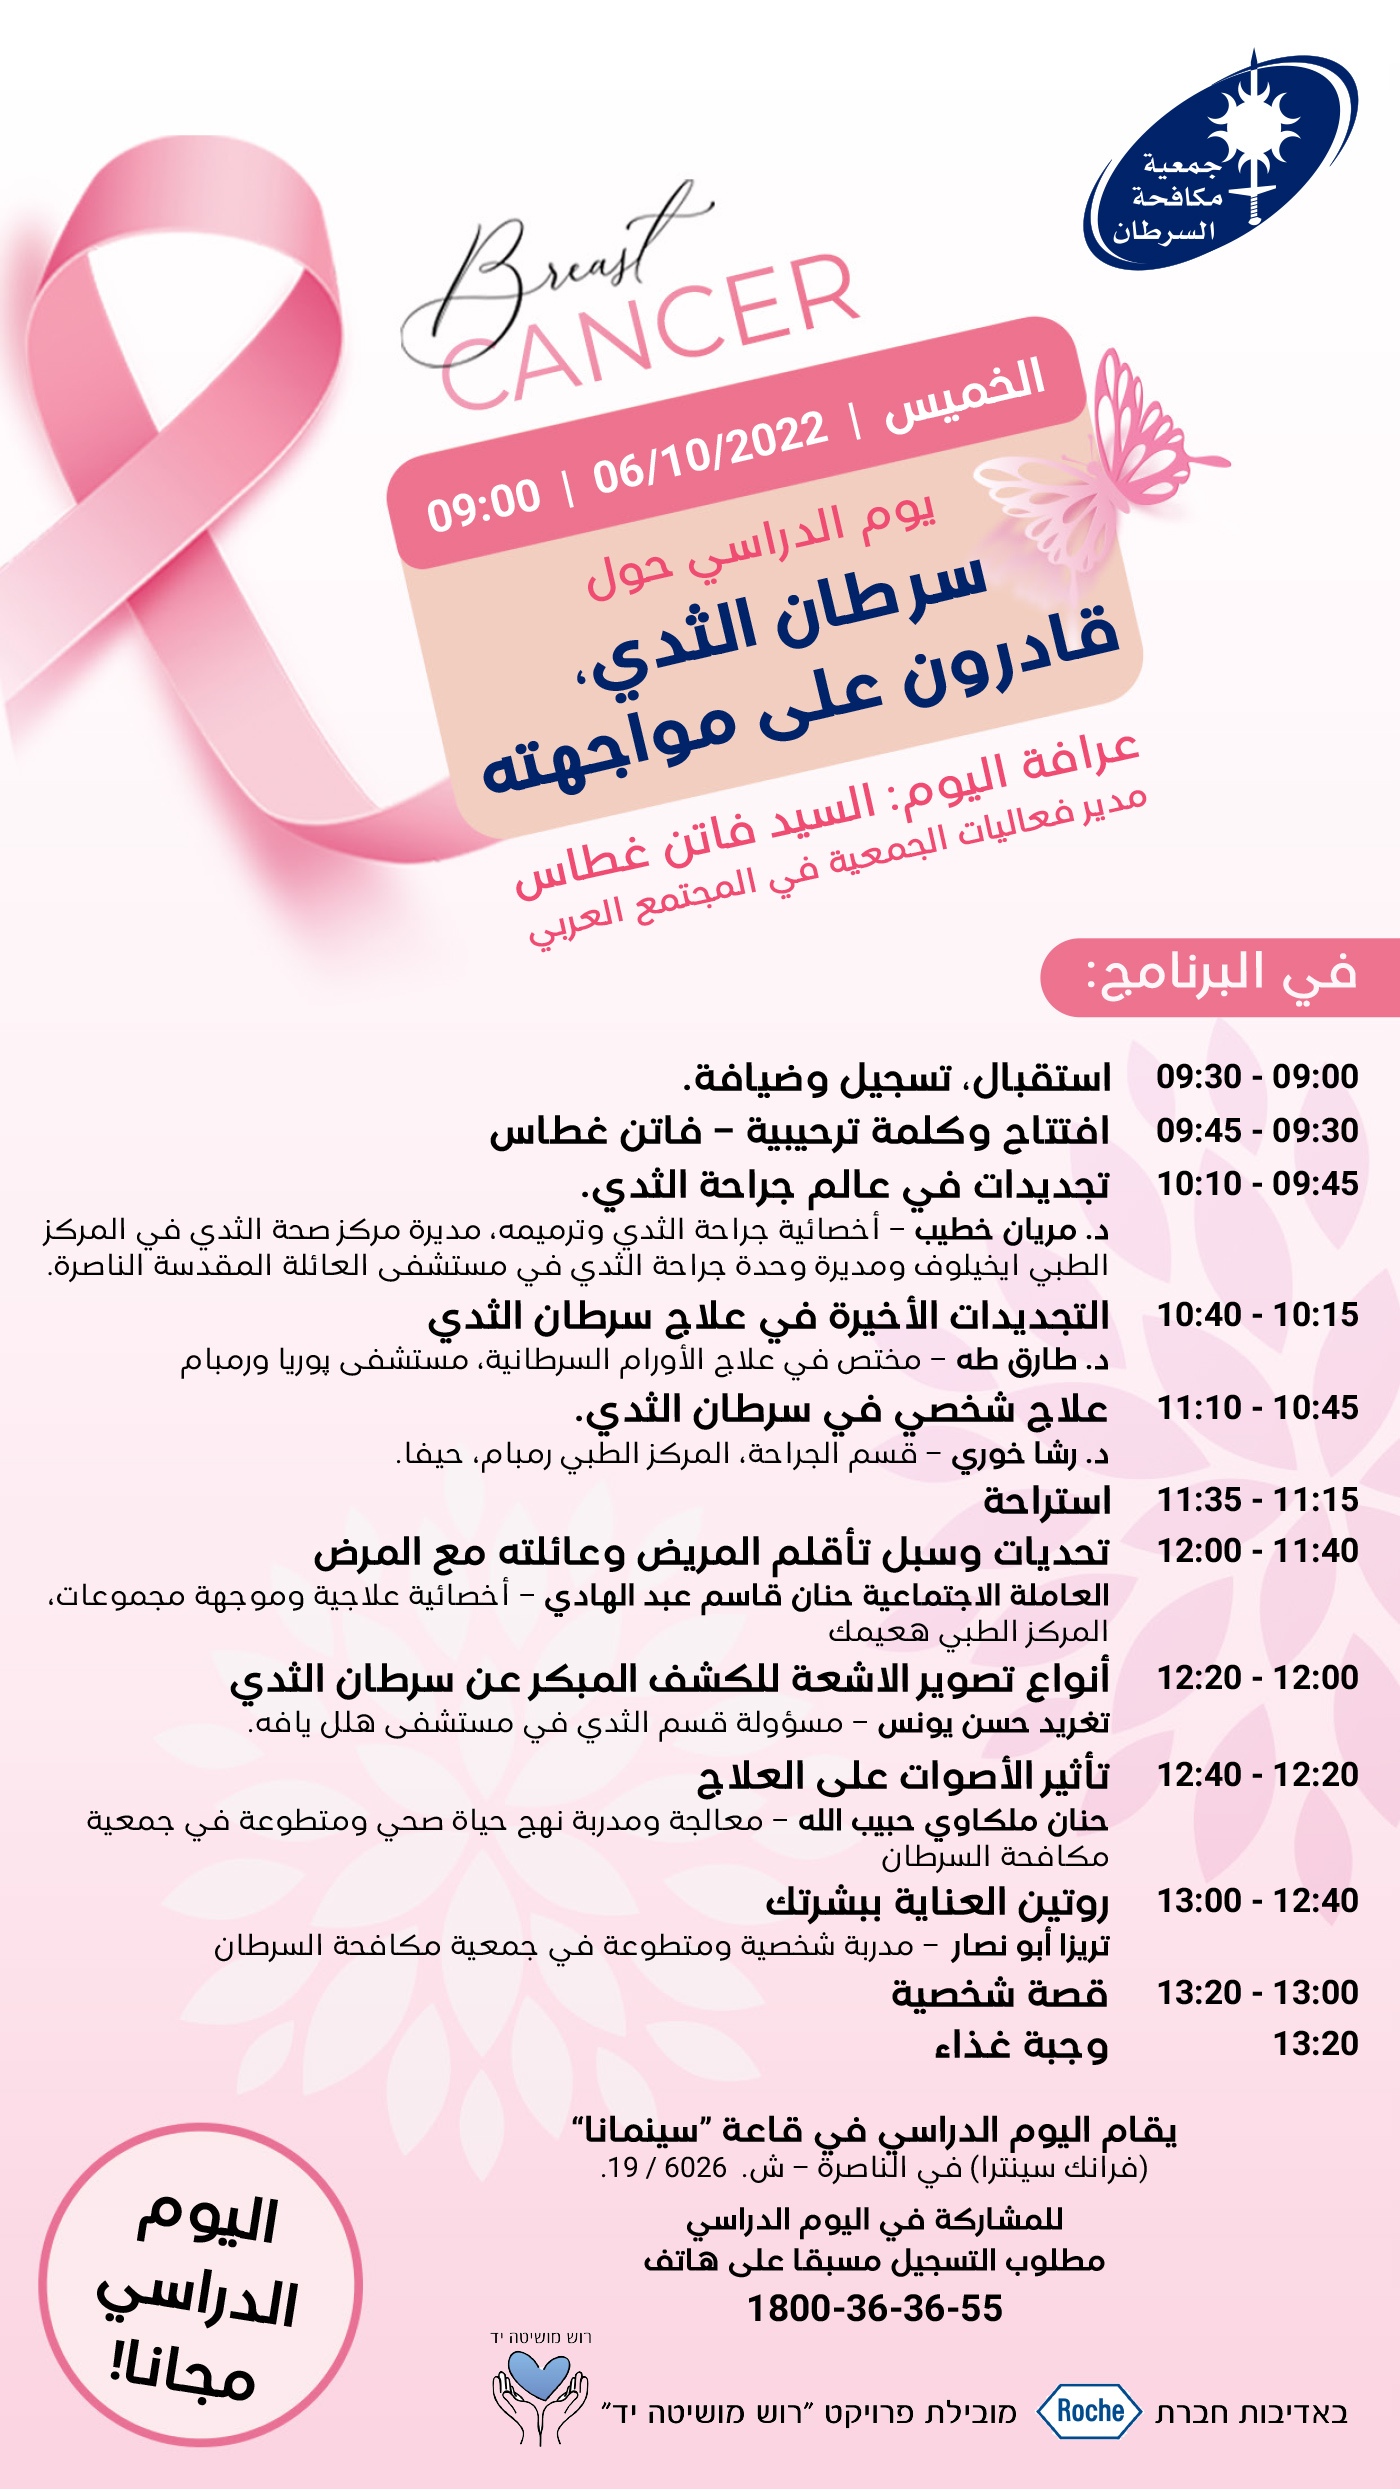 seminar invitation in Arabic